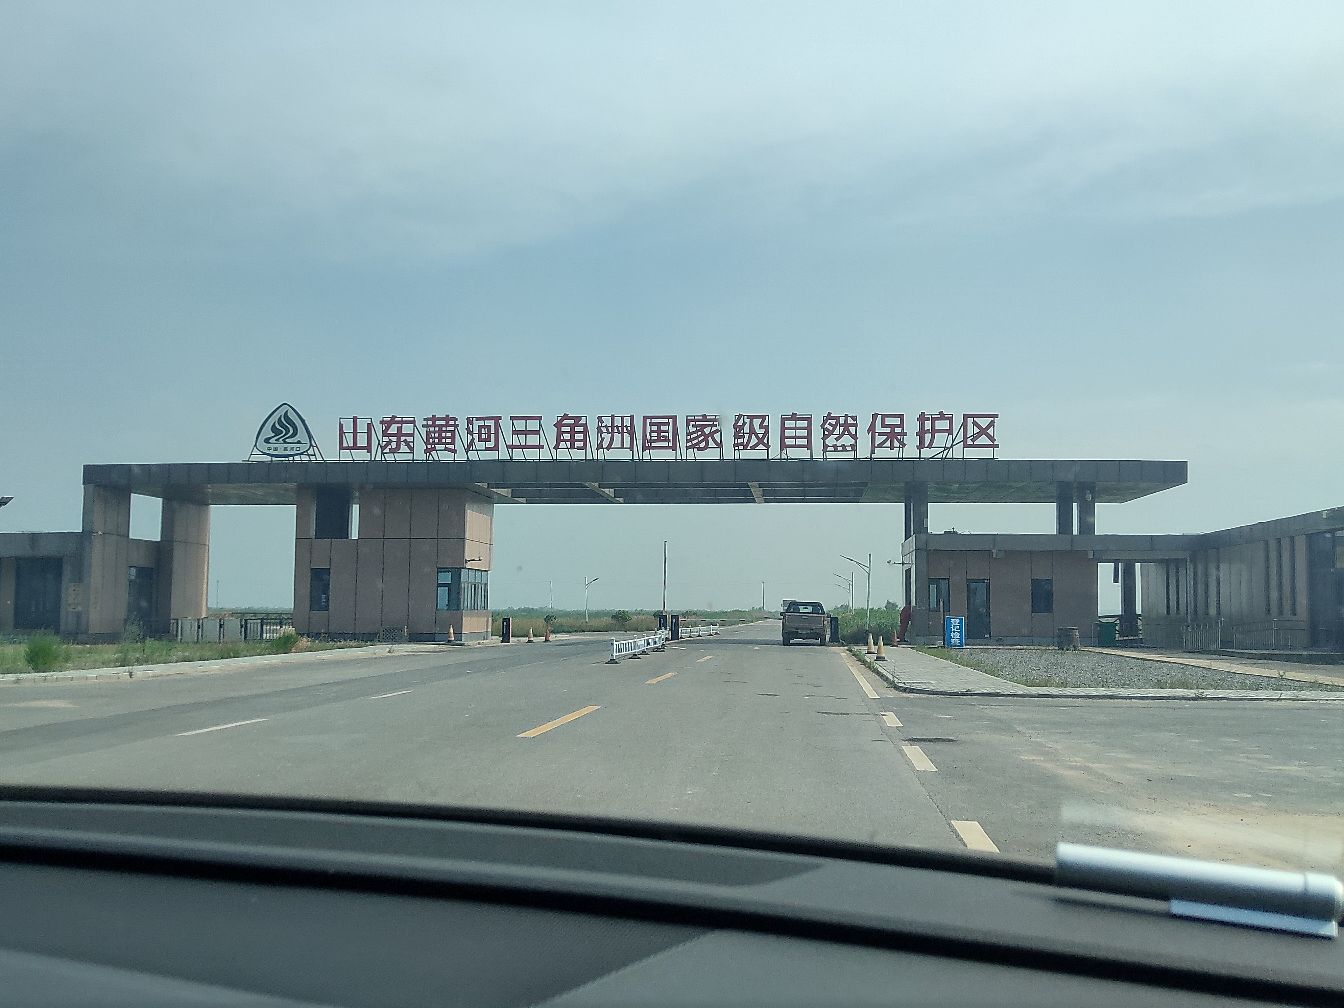 北京出发山东自驾行
第一站。东营黄河入口